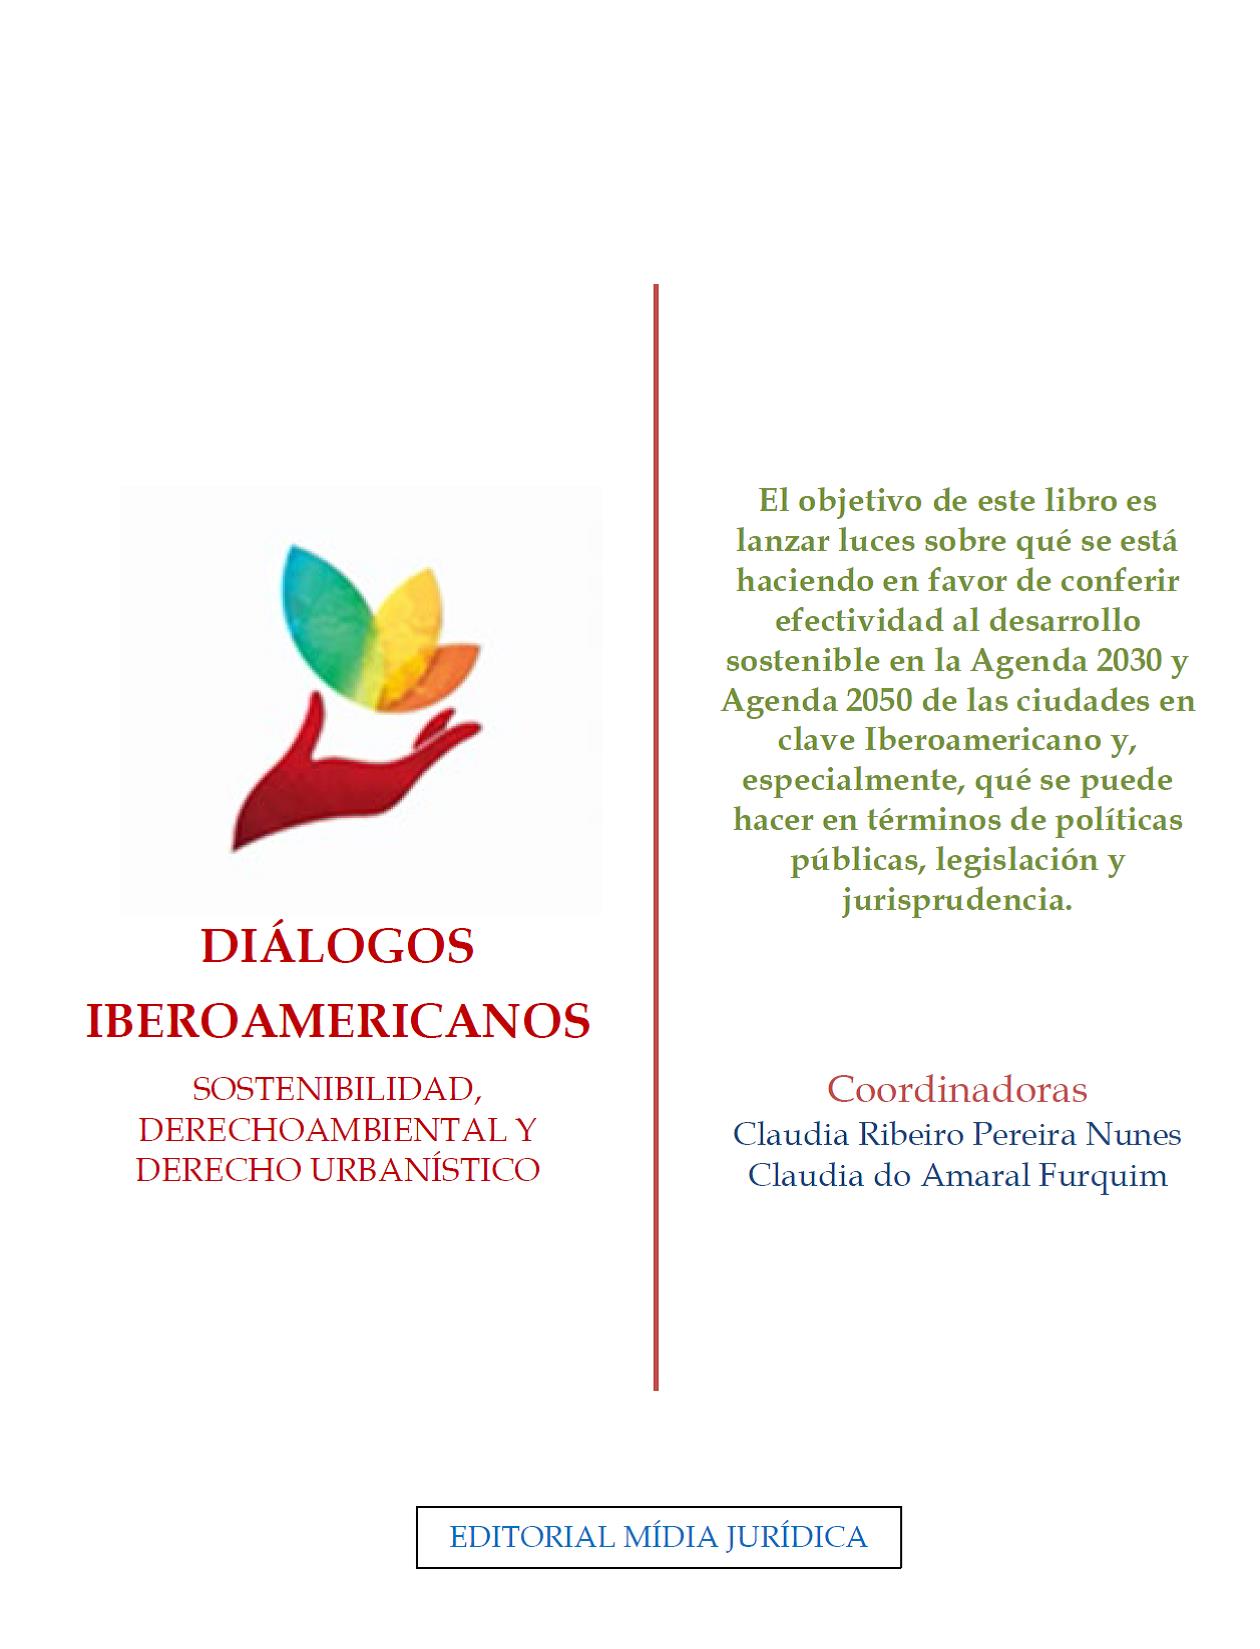 Imagen de portada del libro Diálogos iberoamericanos. Sostenibilidad, derecho ambiental y derecho urbanístico.